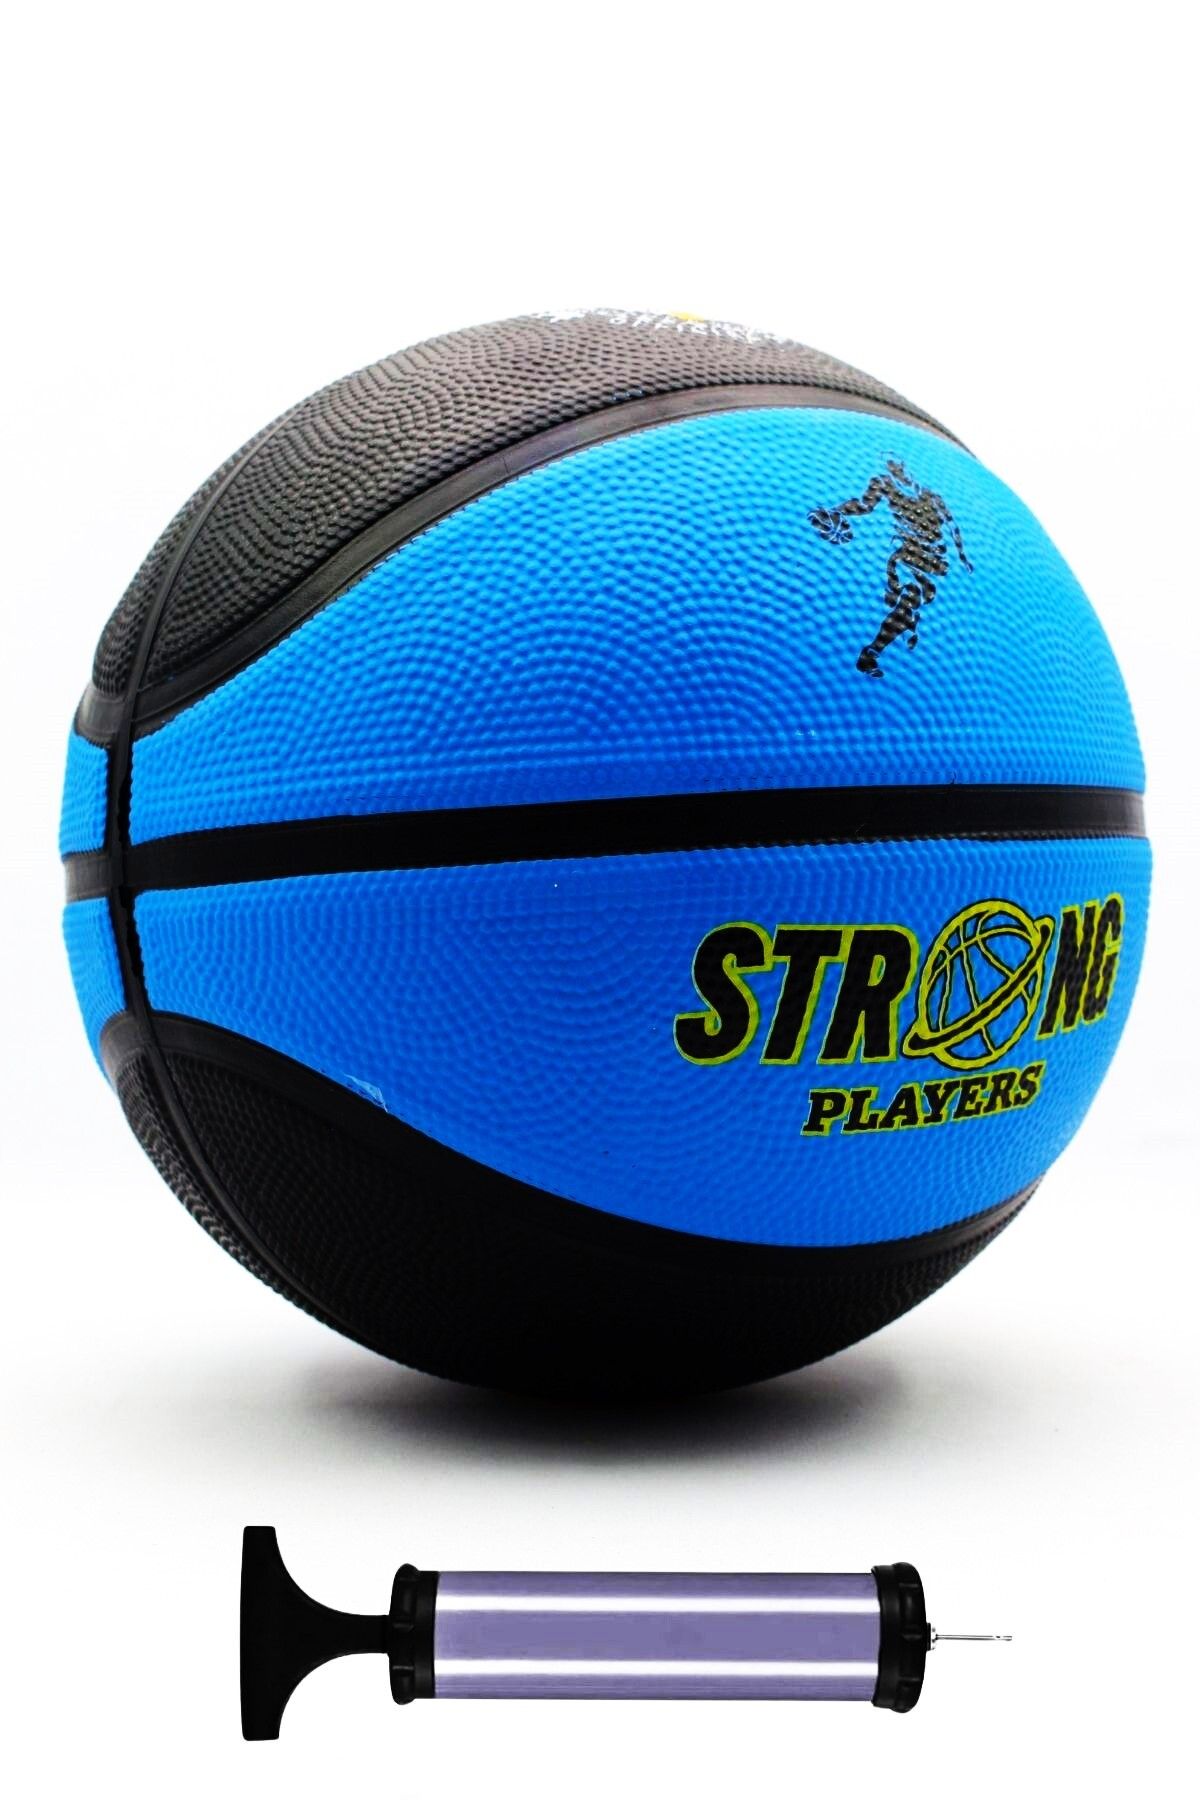 İMVULA Basketbol Topu İç ve Dış Mekan Uyumlu Profesyonel Basketbol